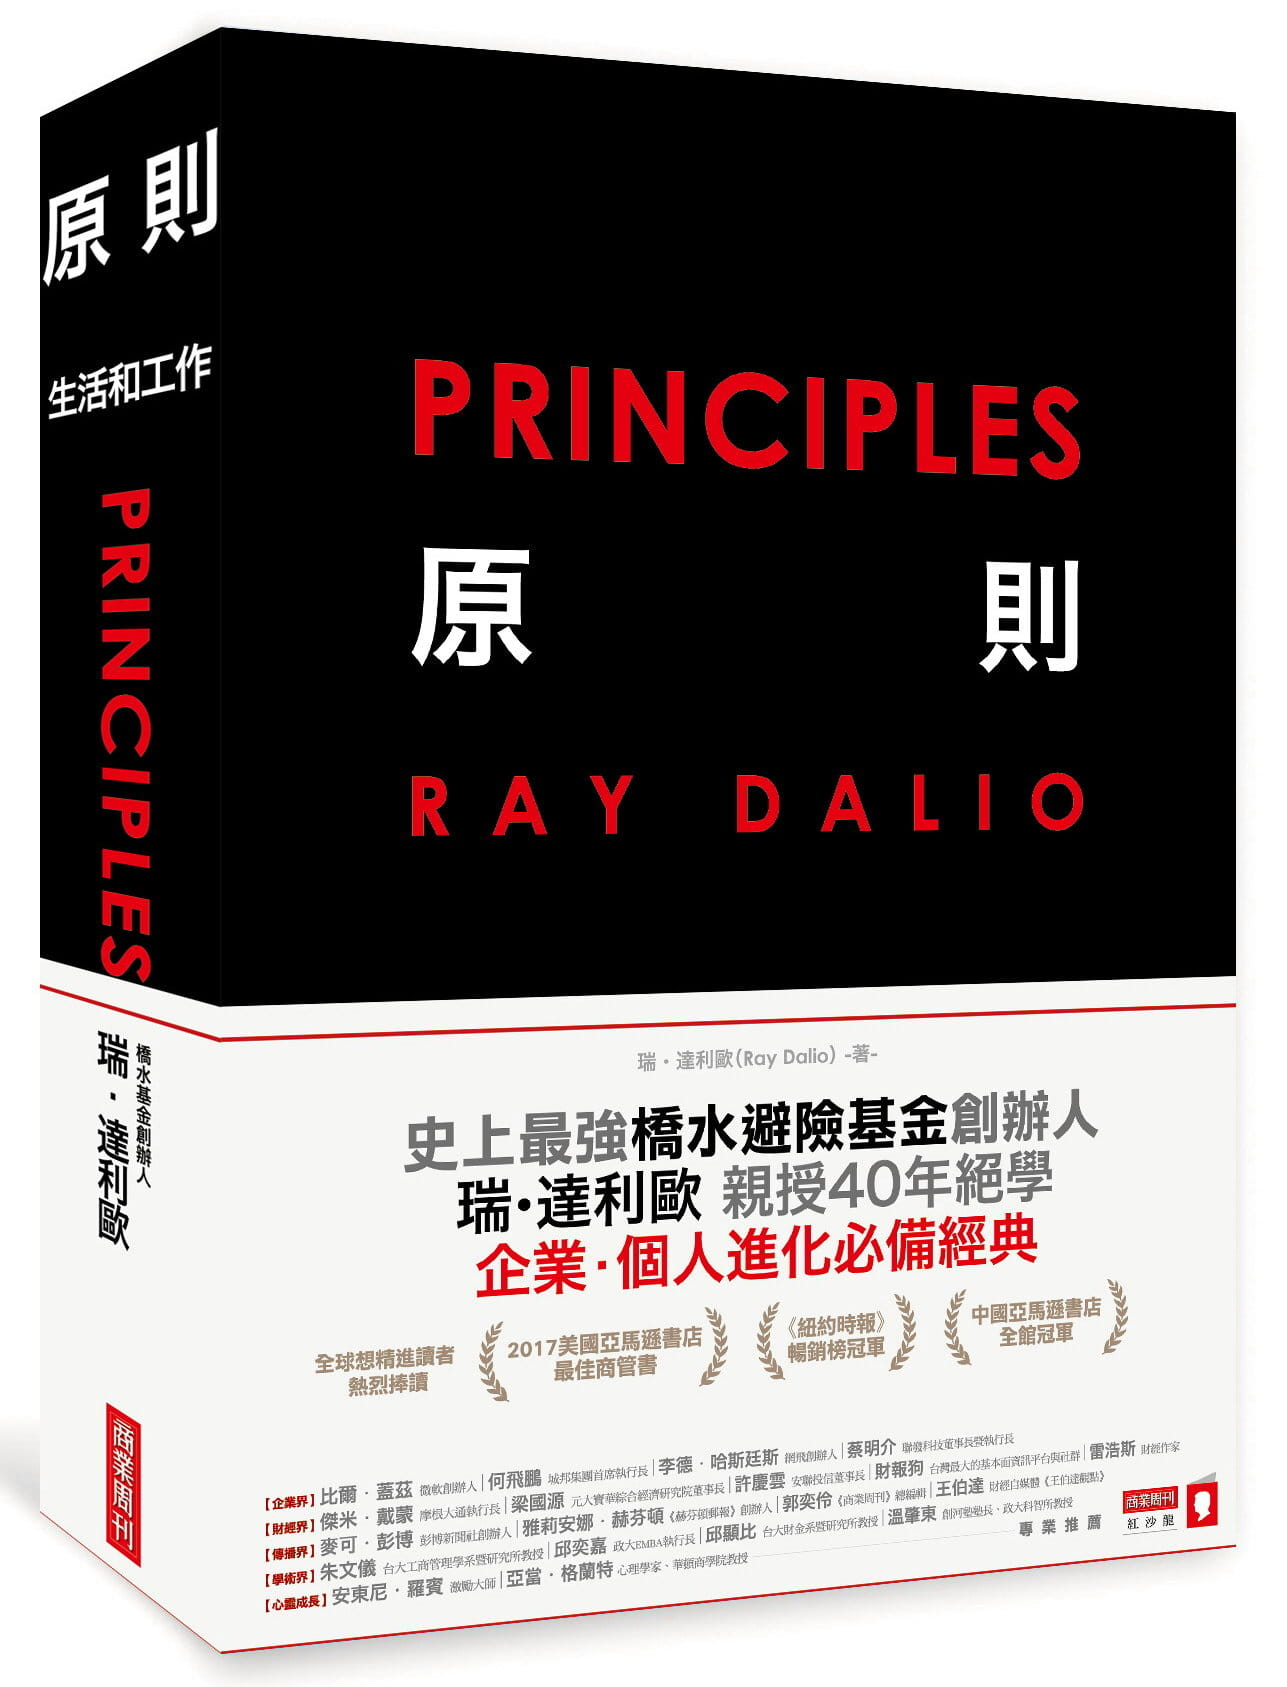 原則 生活和工作 瑞達利歐 Ray Dalio 陳世杰諶悠文戴至中譯 台湾商業周刊 暢銷 橋水基金创始人